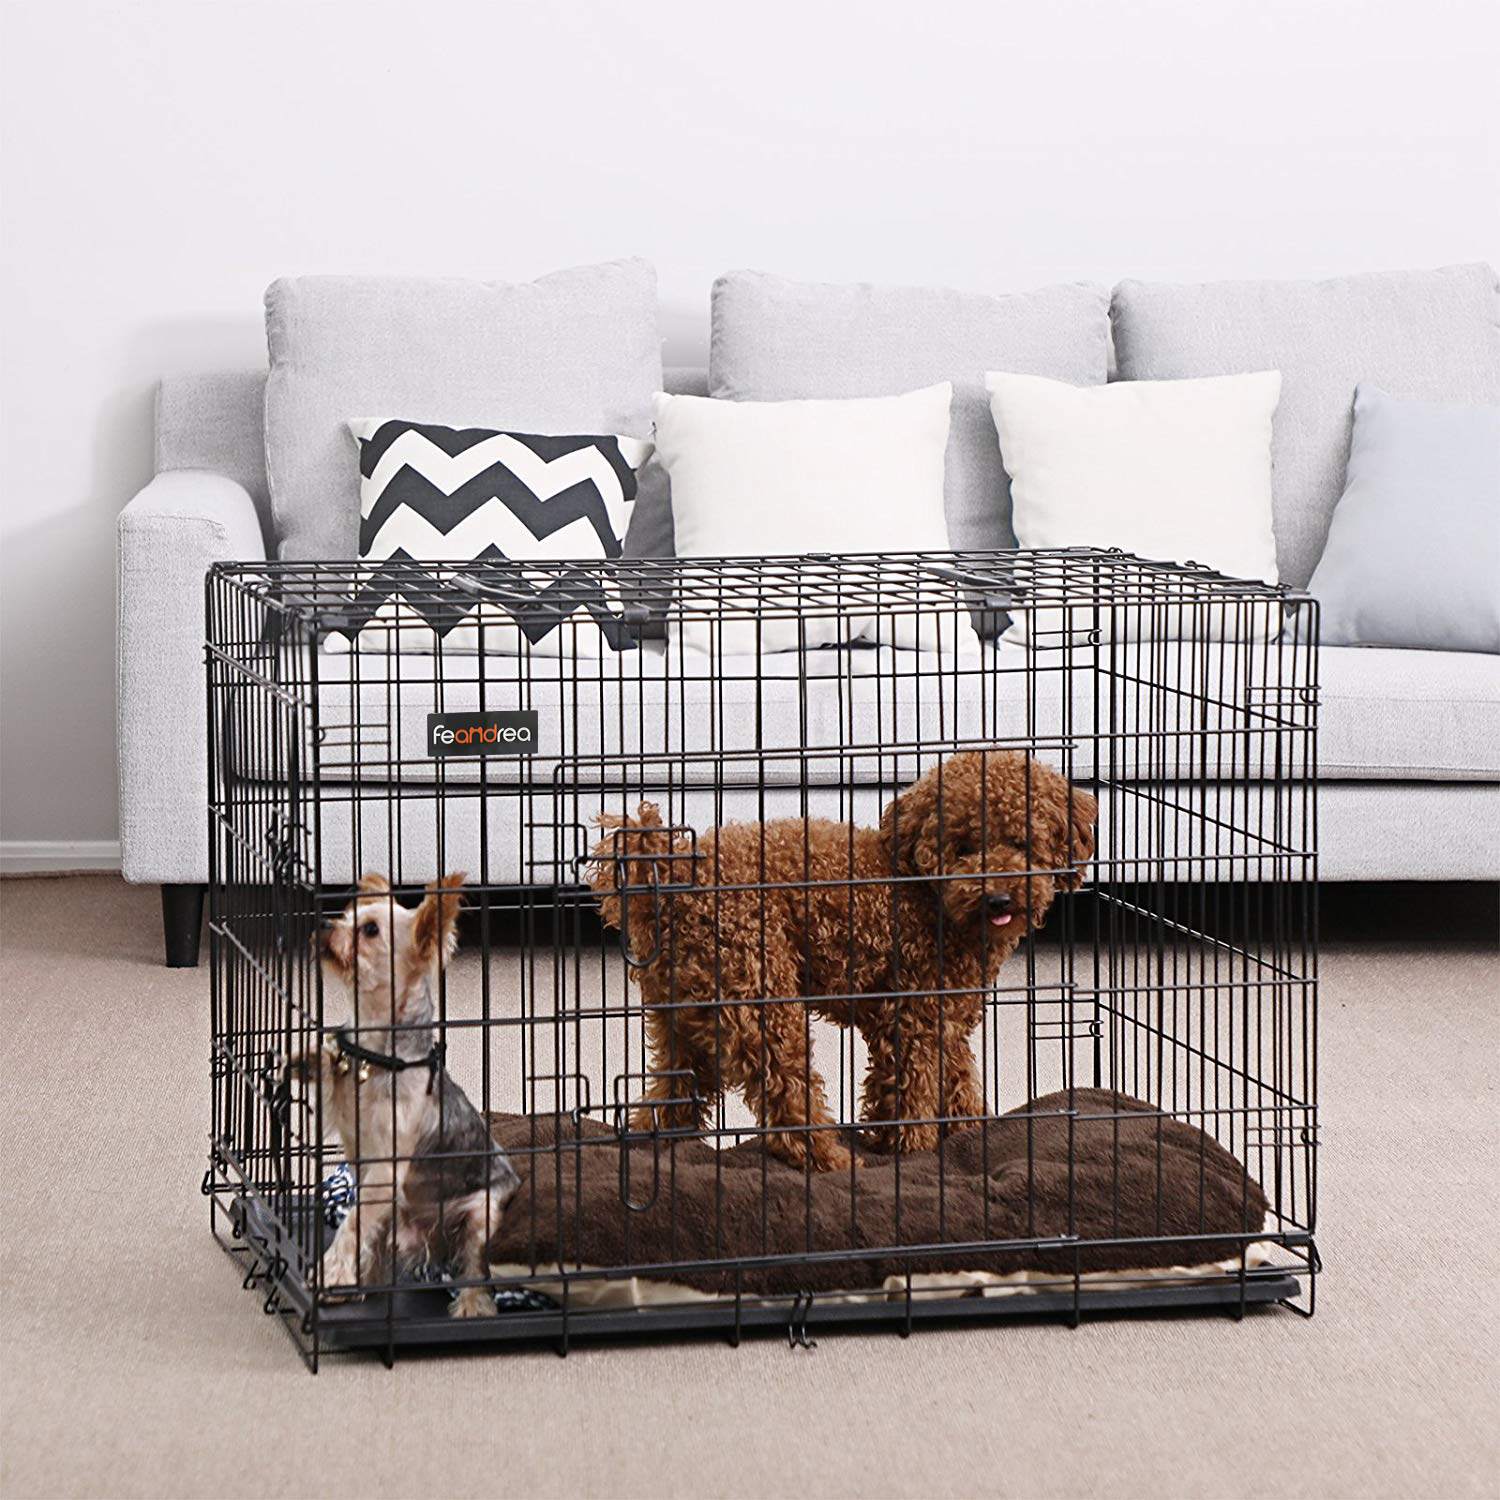 Dog Cage, Dog Furniture, Dog Crate, Escape Proof Dog Cage Kennel, Dog Kennel Indoor, 3